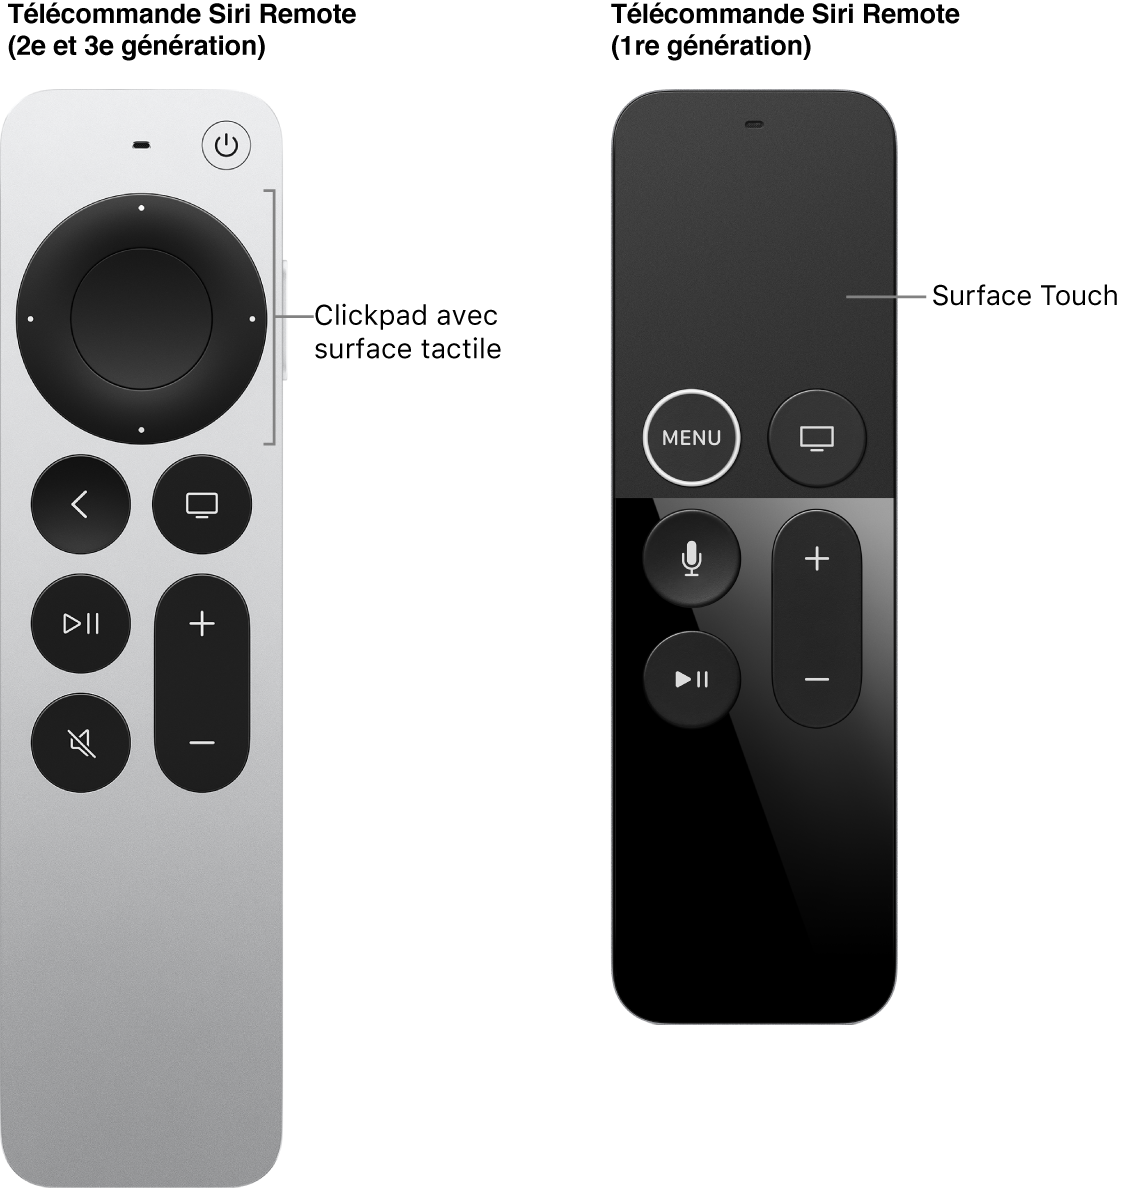 Télécommande Siri Remote (2e et 3e générations) avec un clickpad et télécommande Siri Remote (1re génération) avec une surface tactile